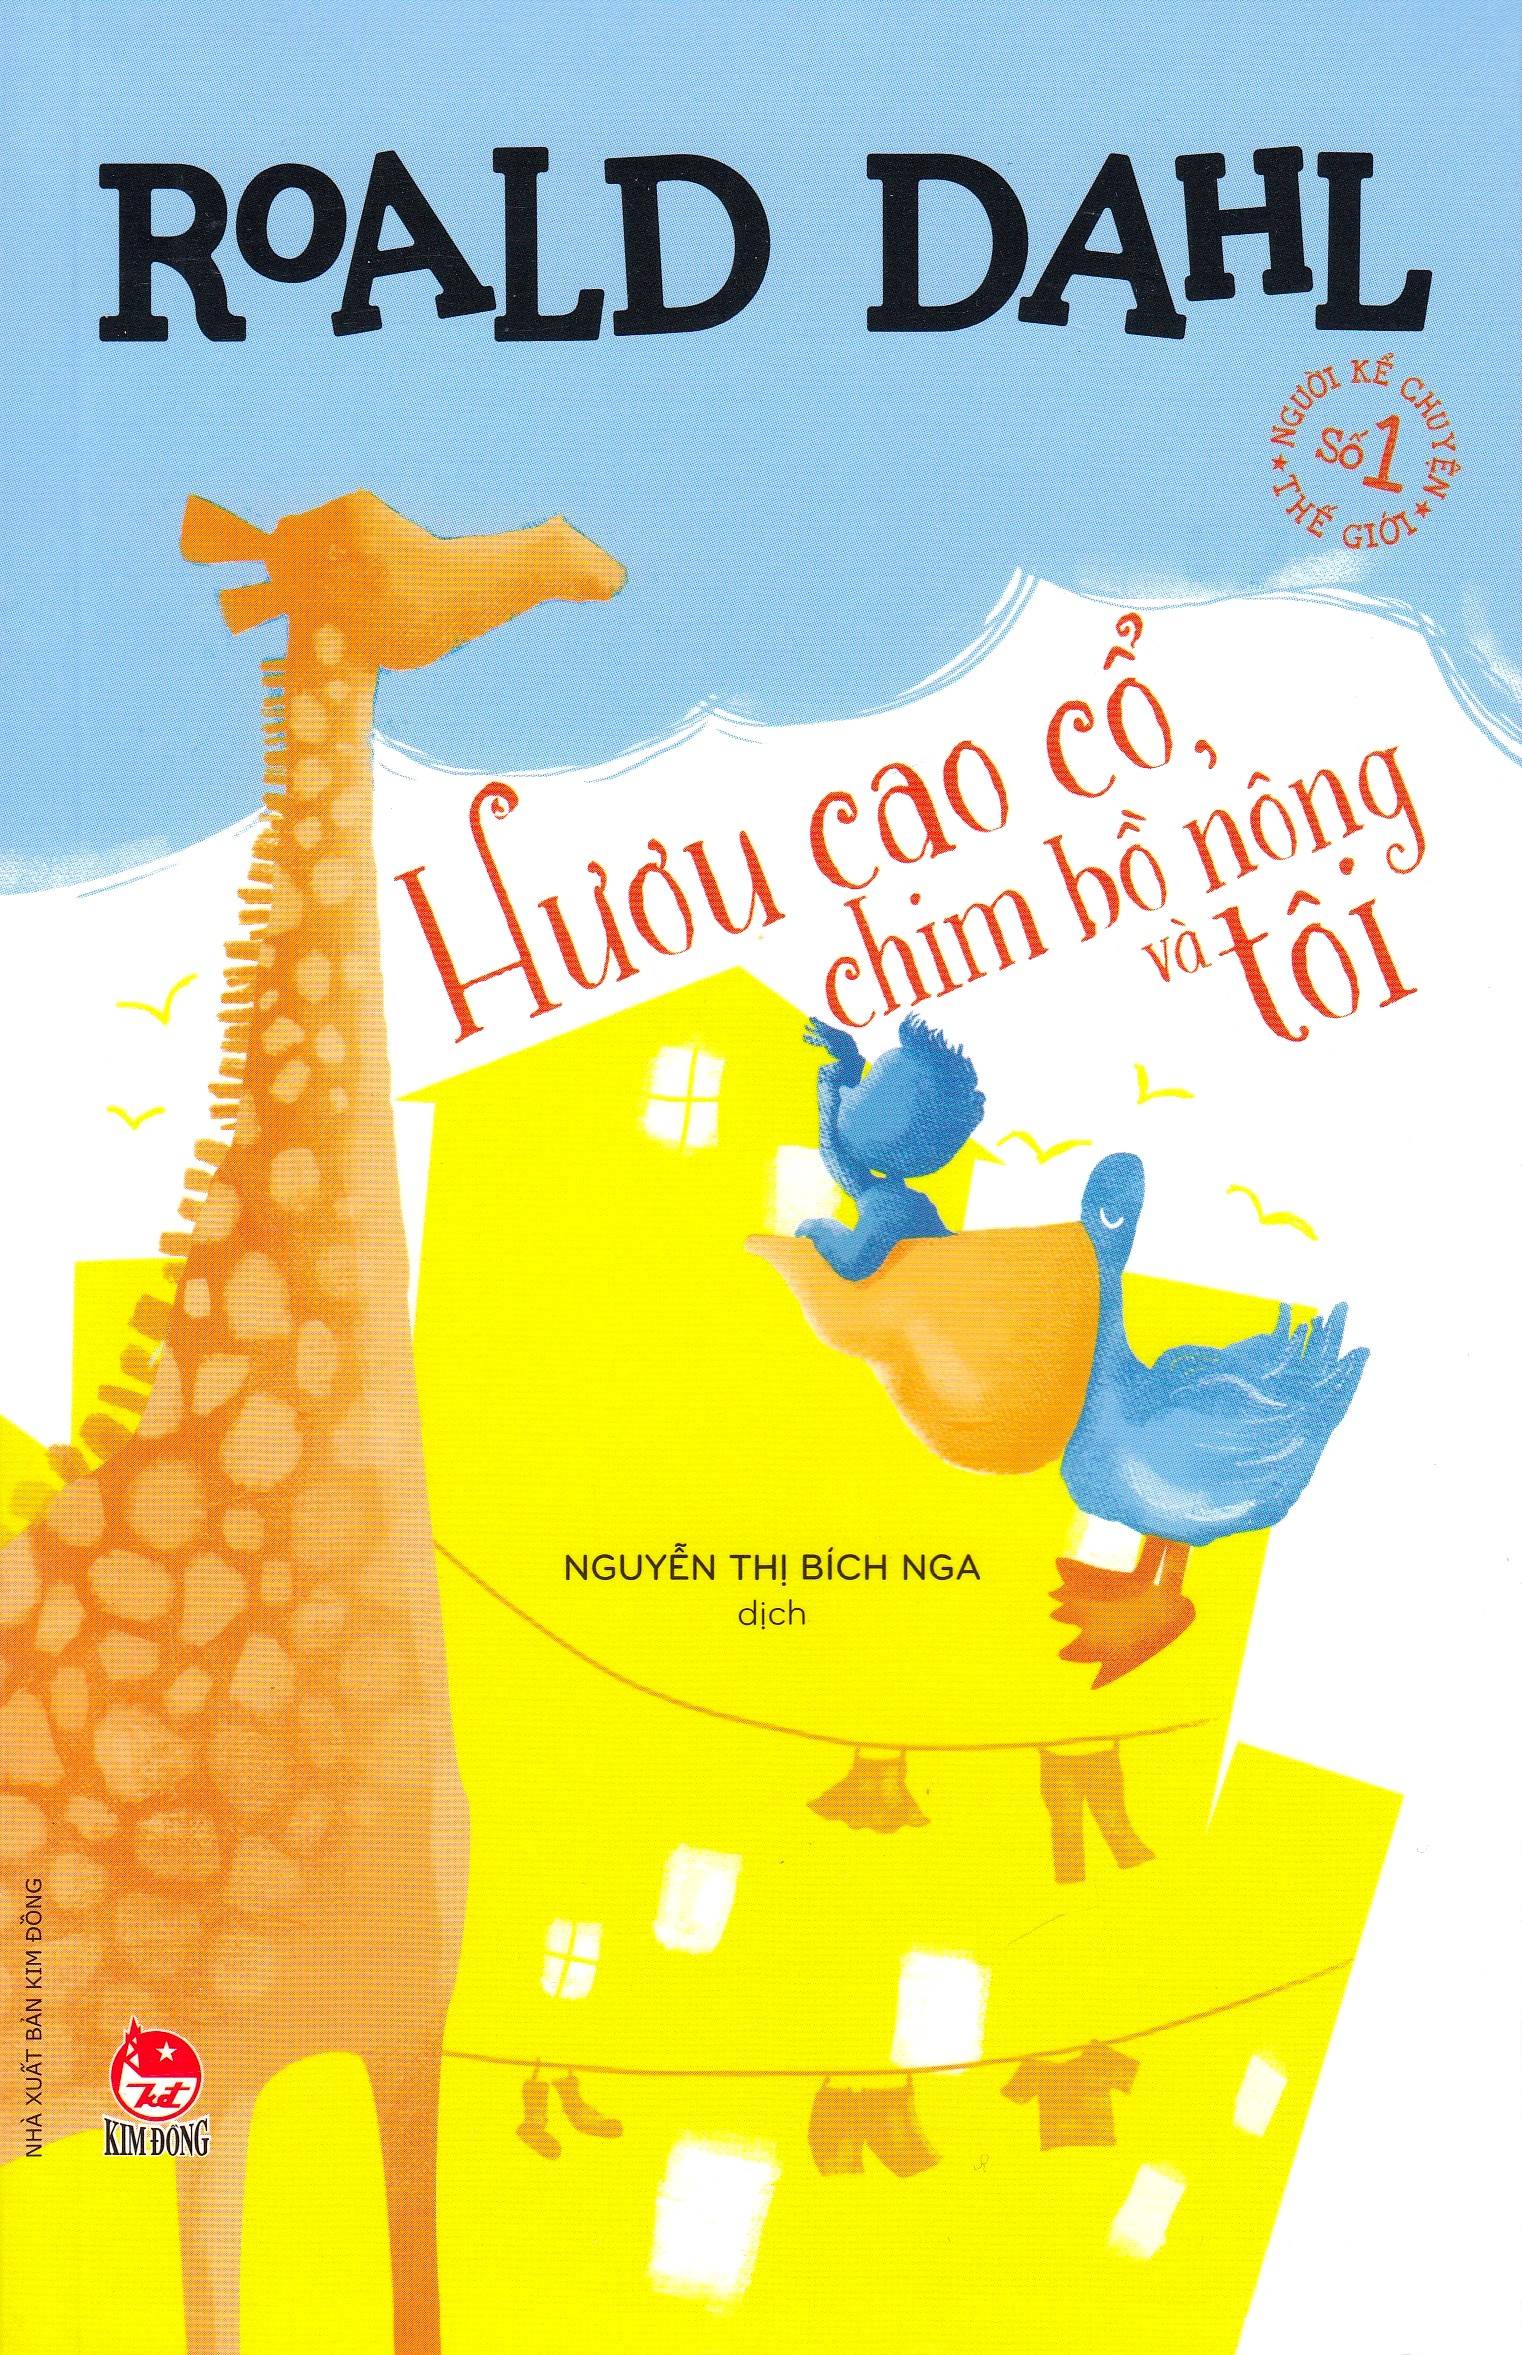 Giraffen och pelikanen och jag (Vietnamesiska)